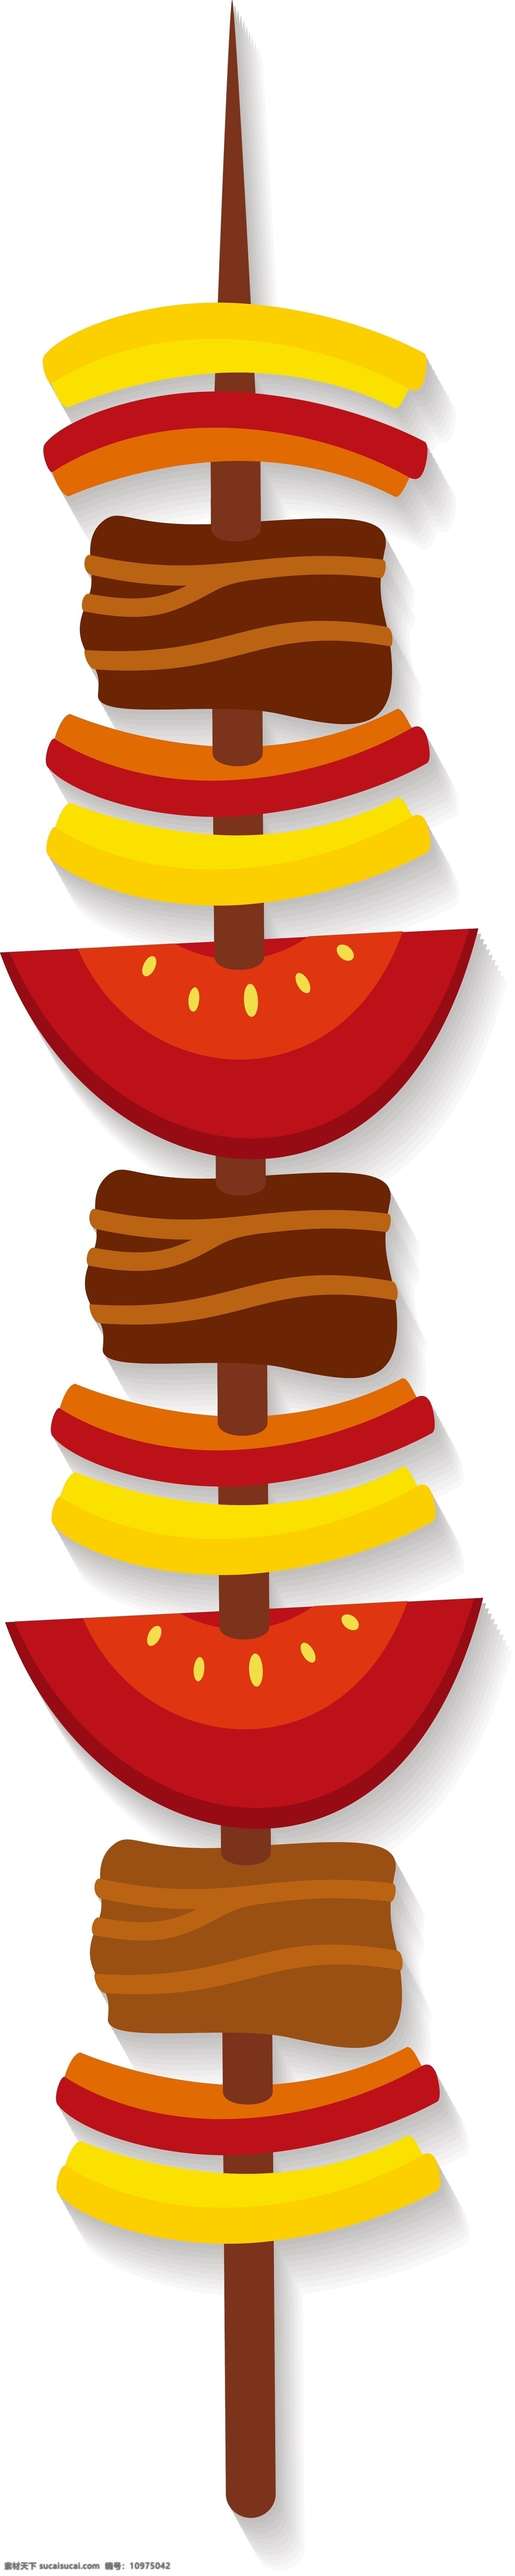 美味 蔬菜 烧烤 插画 蔬菜的烧烤 卡通插画 烤肉插画 烤串插画 烧烤插画 诱人的烧烤 红色的番茄